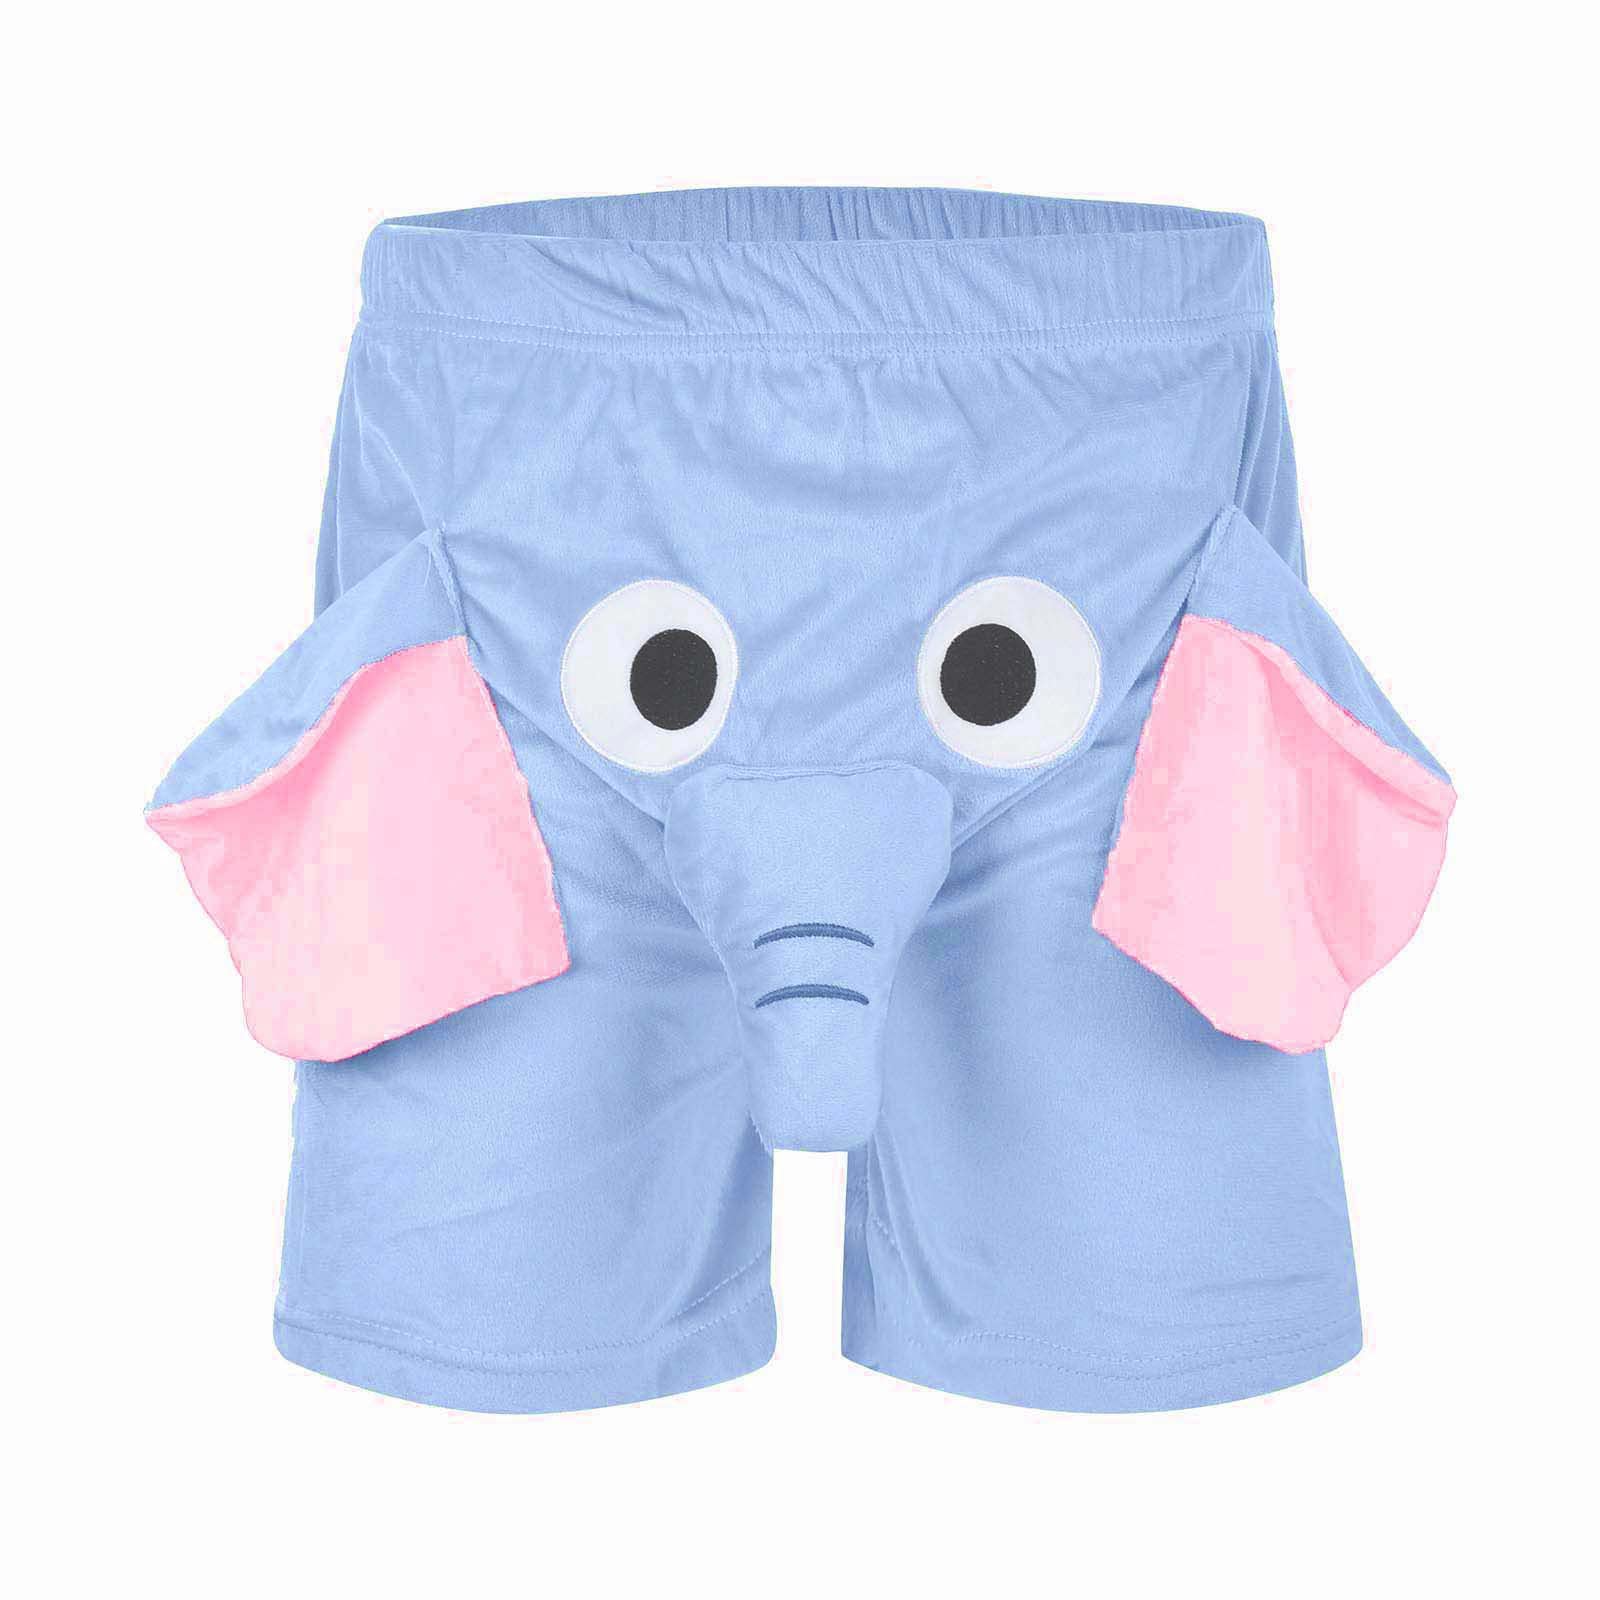 Elephant Trunk Pajama Shorts – charmingworlds